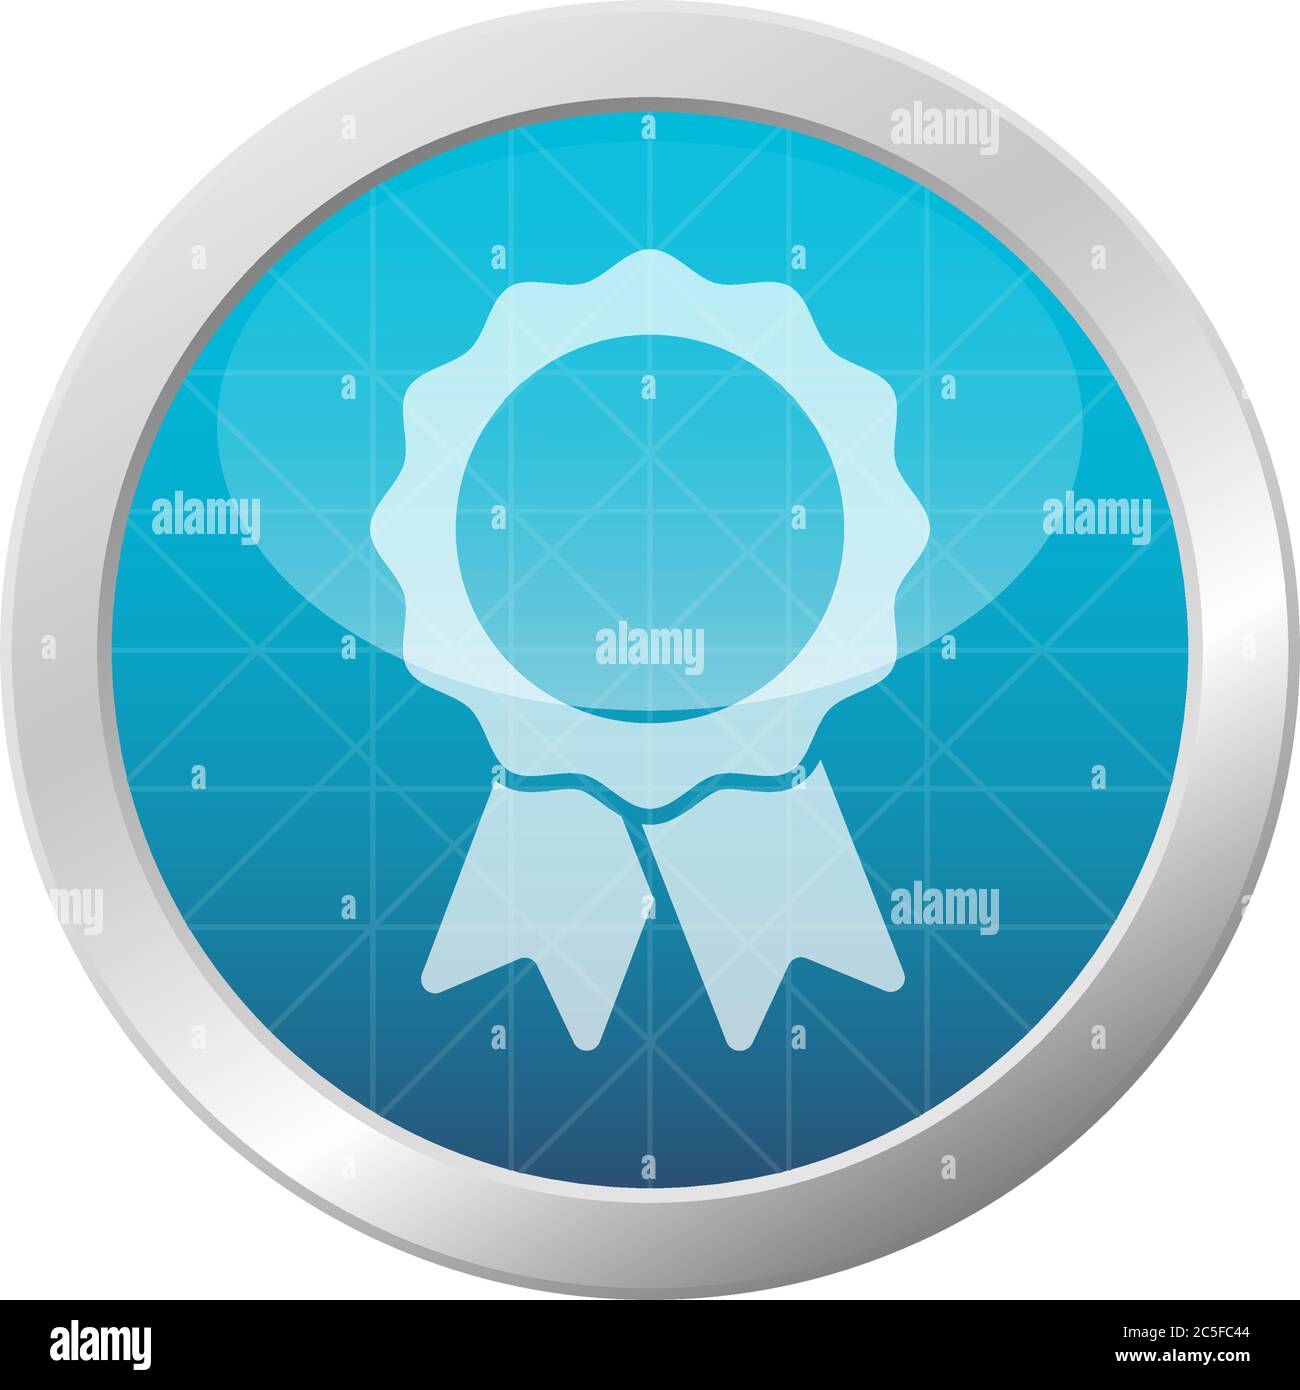 Icona del badge con la medaglia del nastro su un cerchio azzurro lucido, colore azzurro, colore lucido, colore della cornice, simbolo del premio, immagine vettoriale Illustrazione Vettoriale